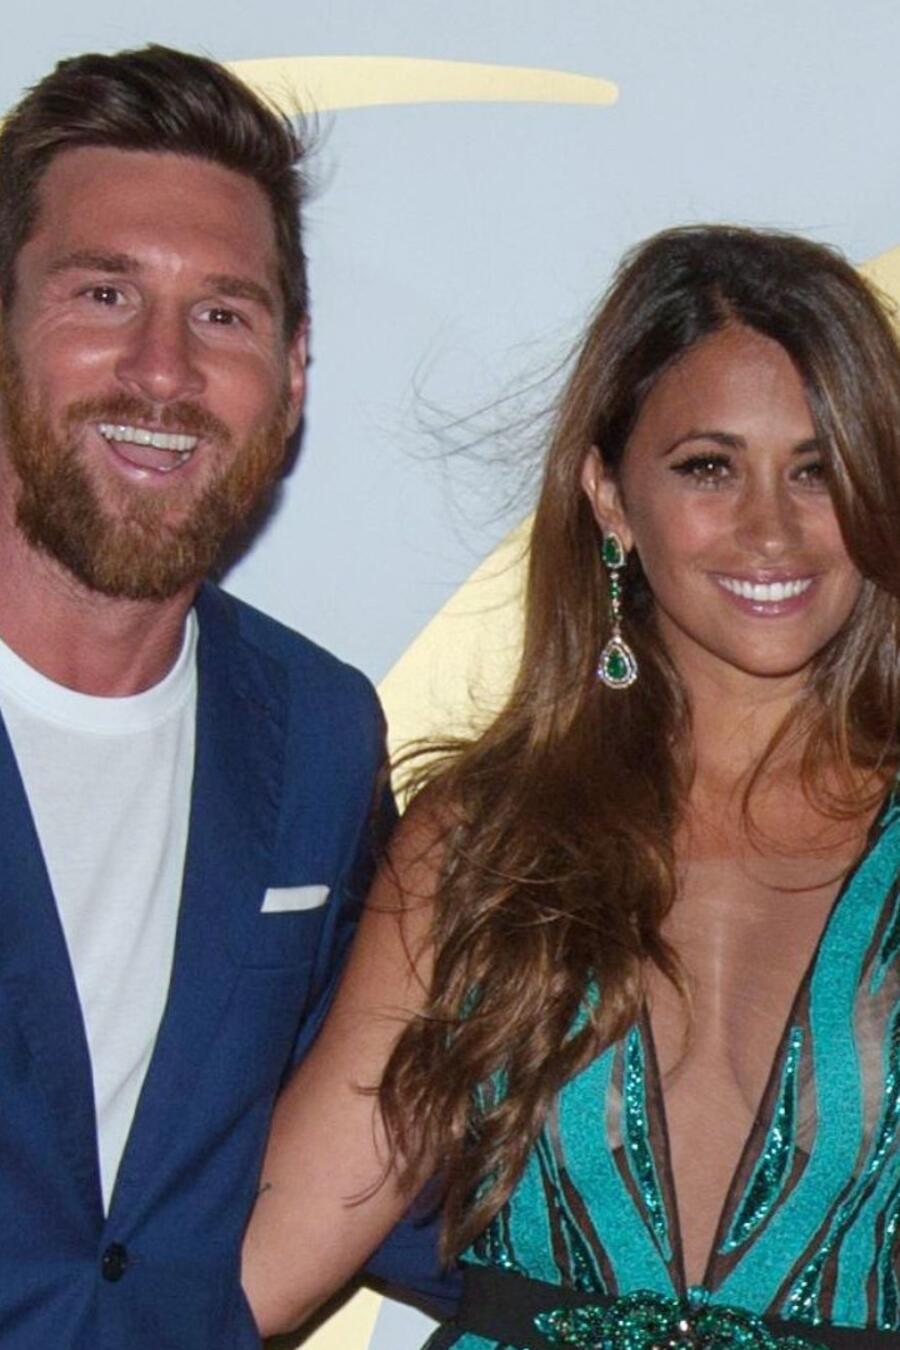 Leo Messi y Antonella Rocuzzo asisten a la fiesta de bodas de Cesc Fabregas y Daniella Semaan el 24 de julio de 2018 en Ibiza, España.